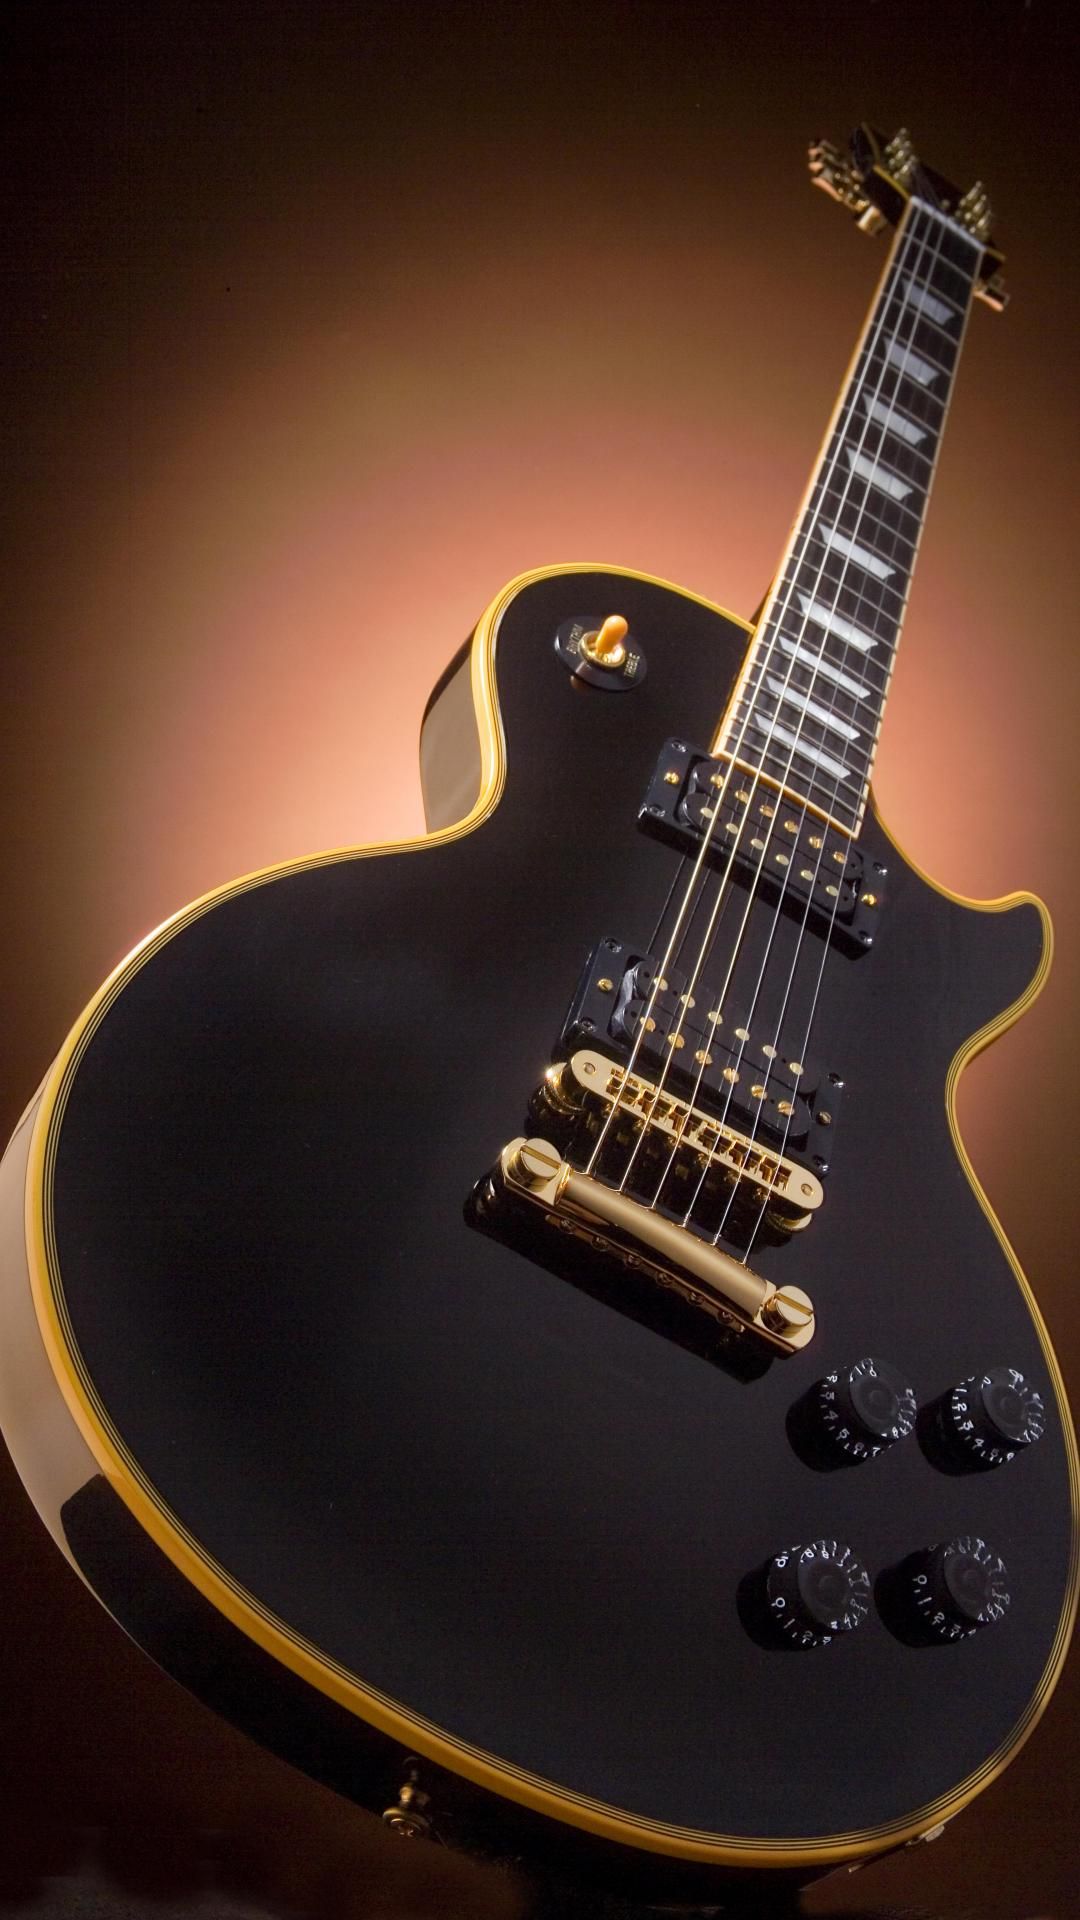 Free download ScreenHeaven Gibson Les Paul guitars desktop